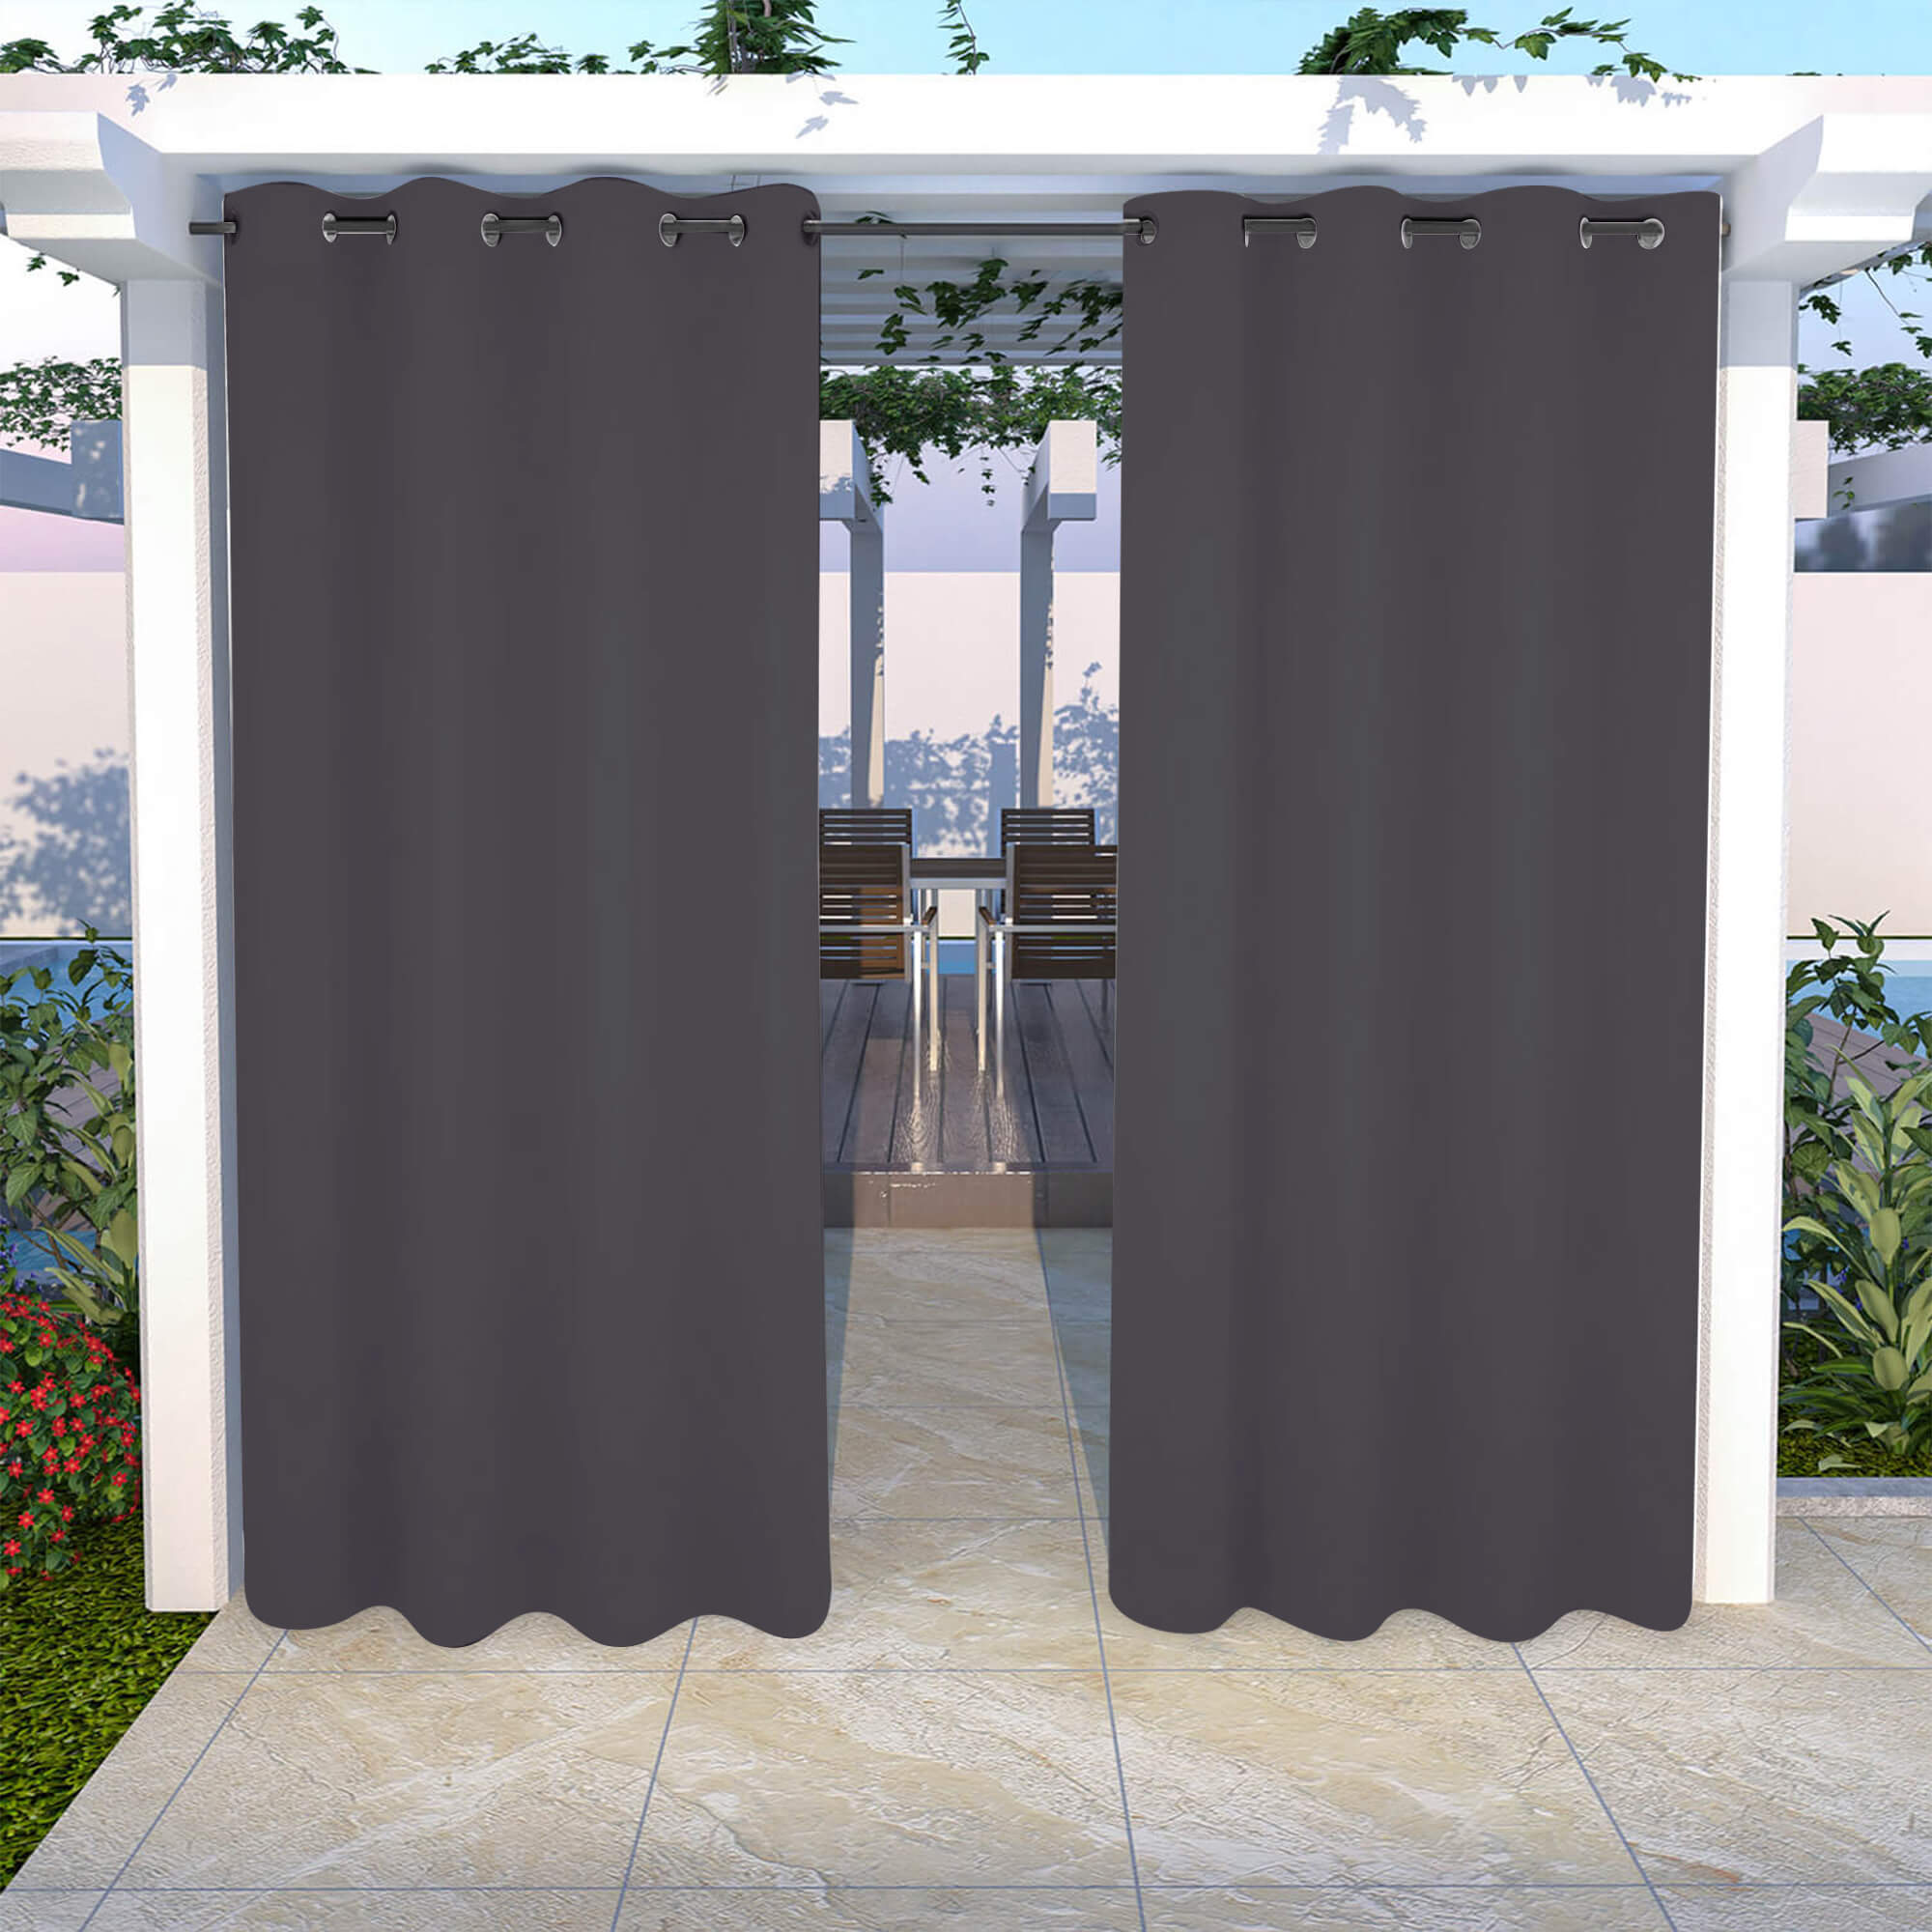 Snowcity Outdoor Curtains Waterproof Grommet Top 1 Panel - Grey